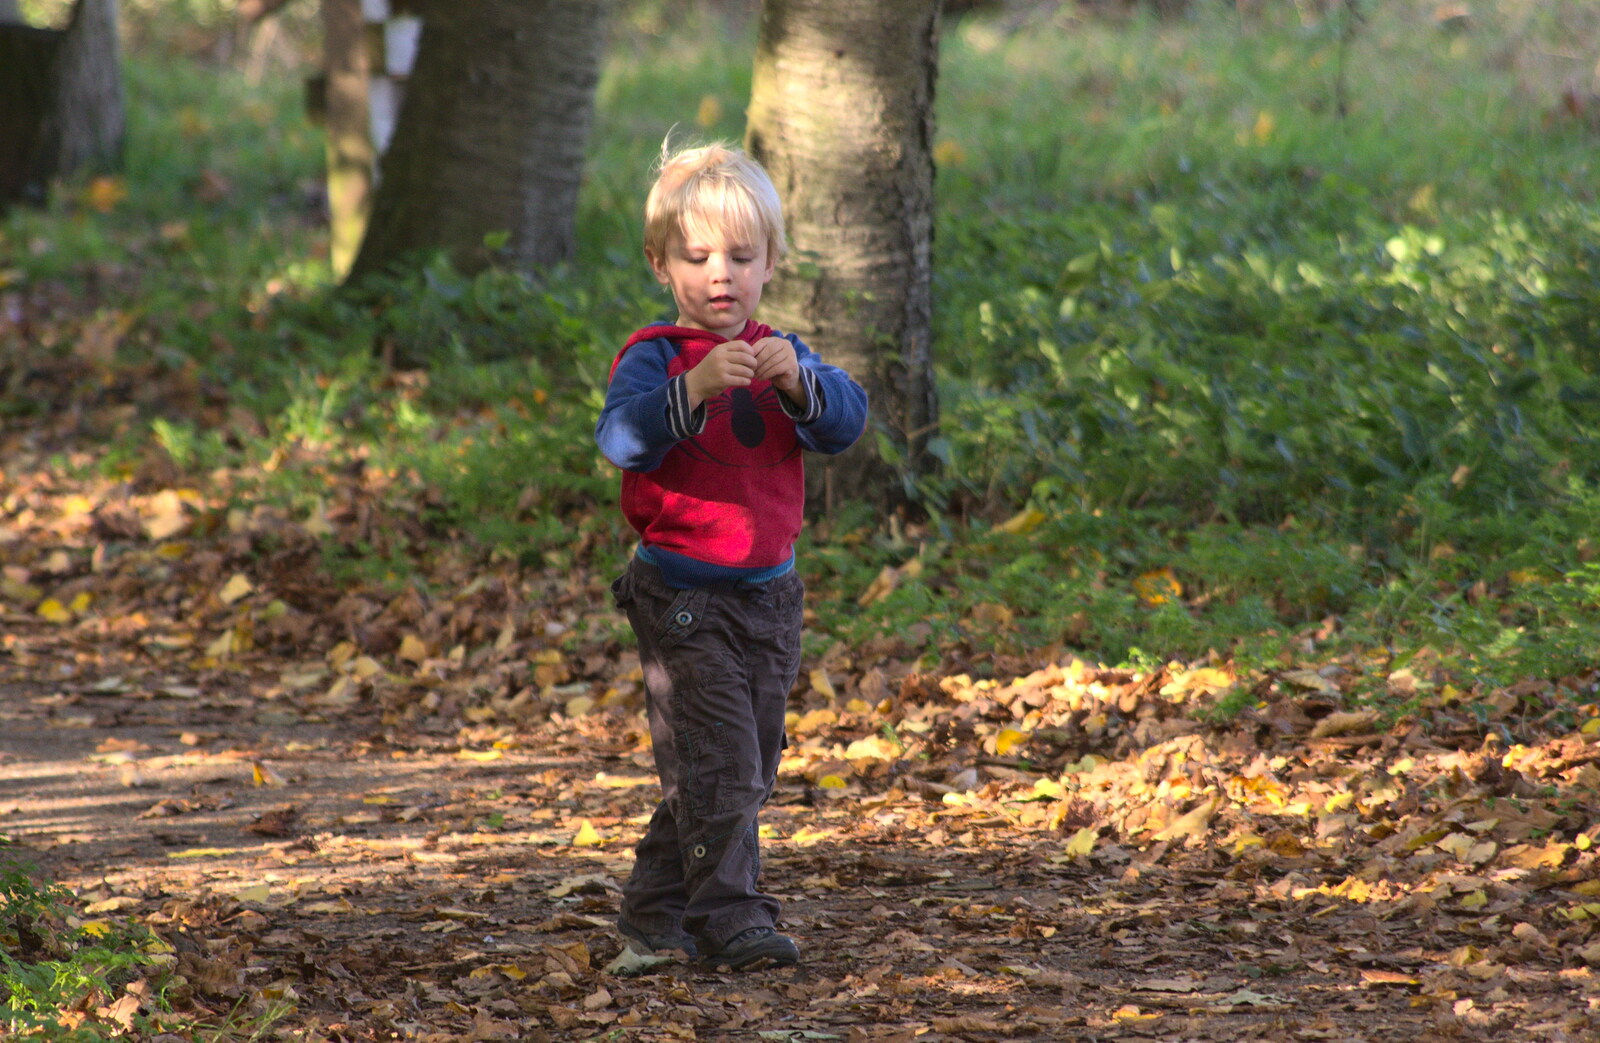 Harry roams around from Another Walk around Thornham Estate, Suffolk - 27th October 2014